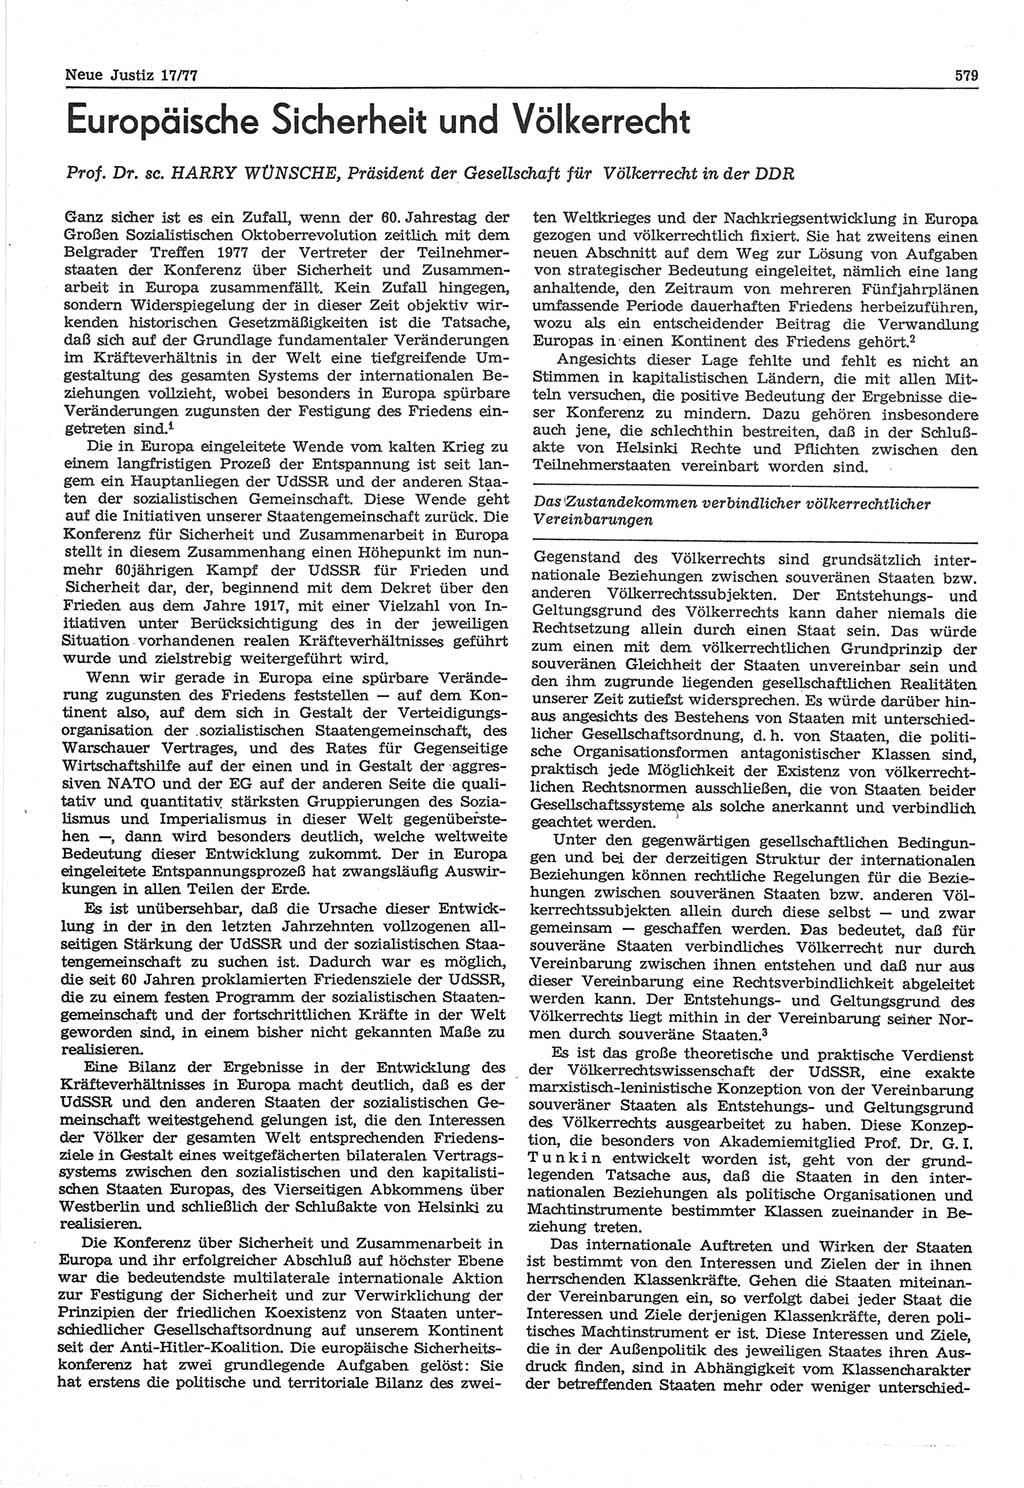 Neue Justiz (NJ), Zeitschrift für Recht und Rechtswissenschaft-Zeitschrift, sozialistisches Recht und Gesetzlichkeit, 31. Jahrgang 1977, Seite 579 (NJ DDR 1977, S. 579)